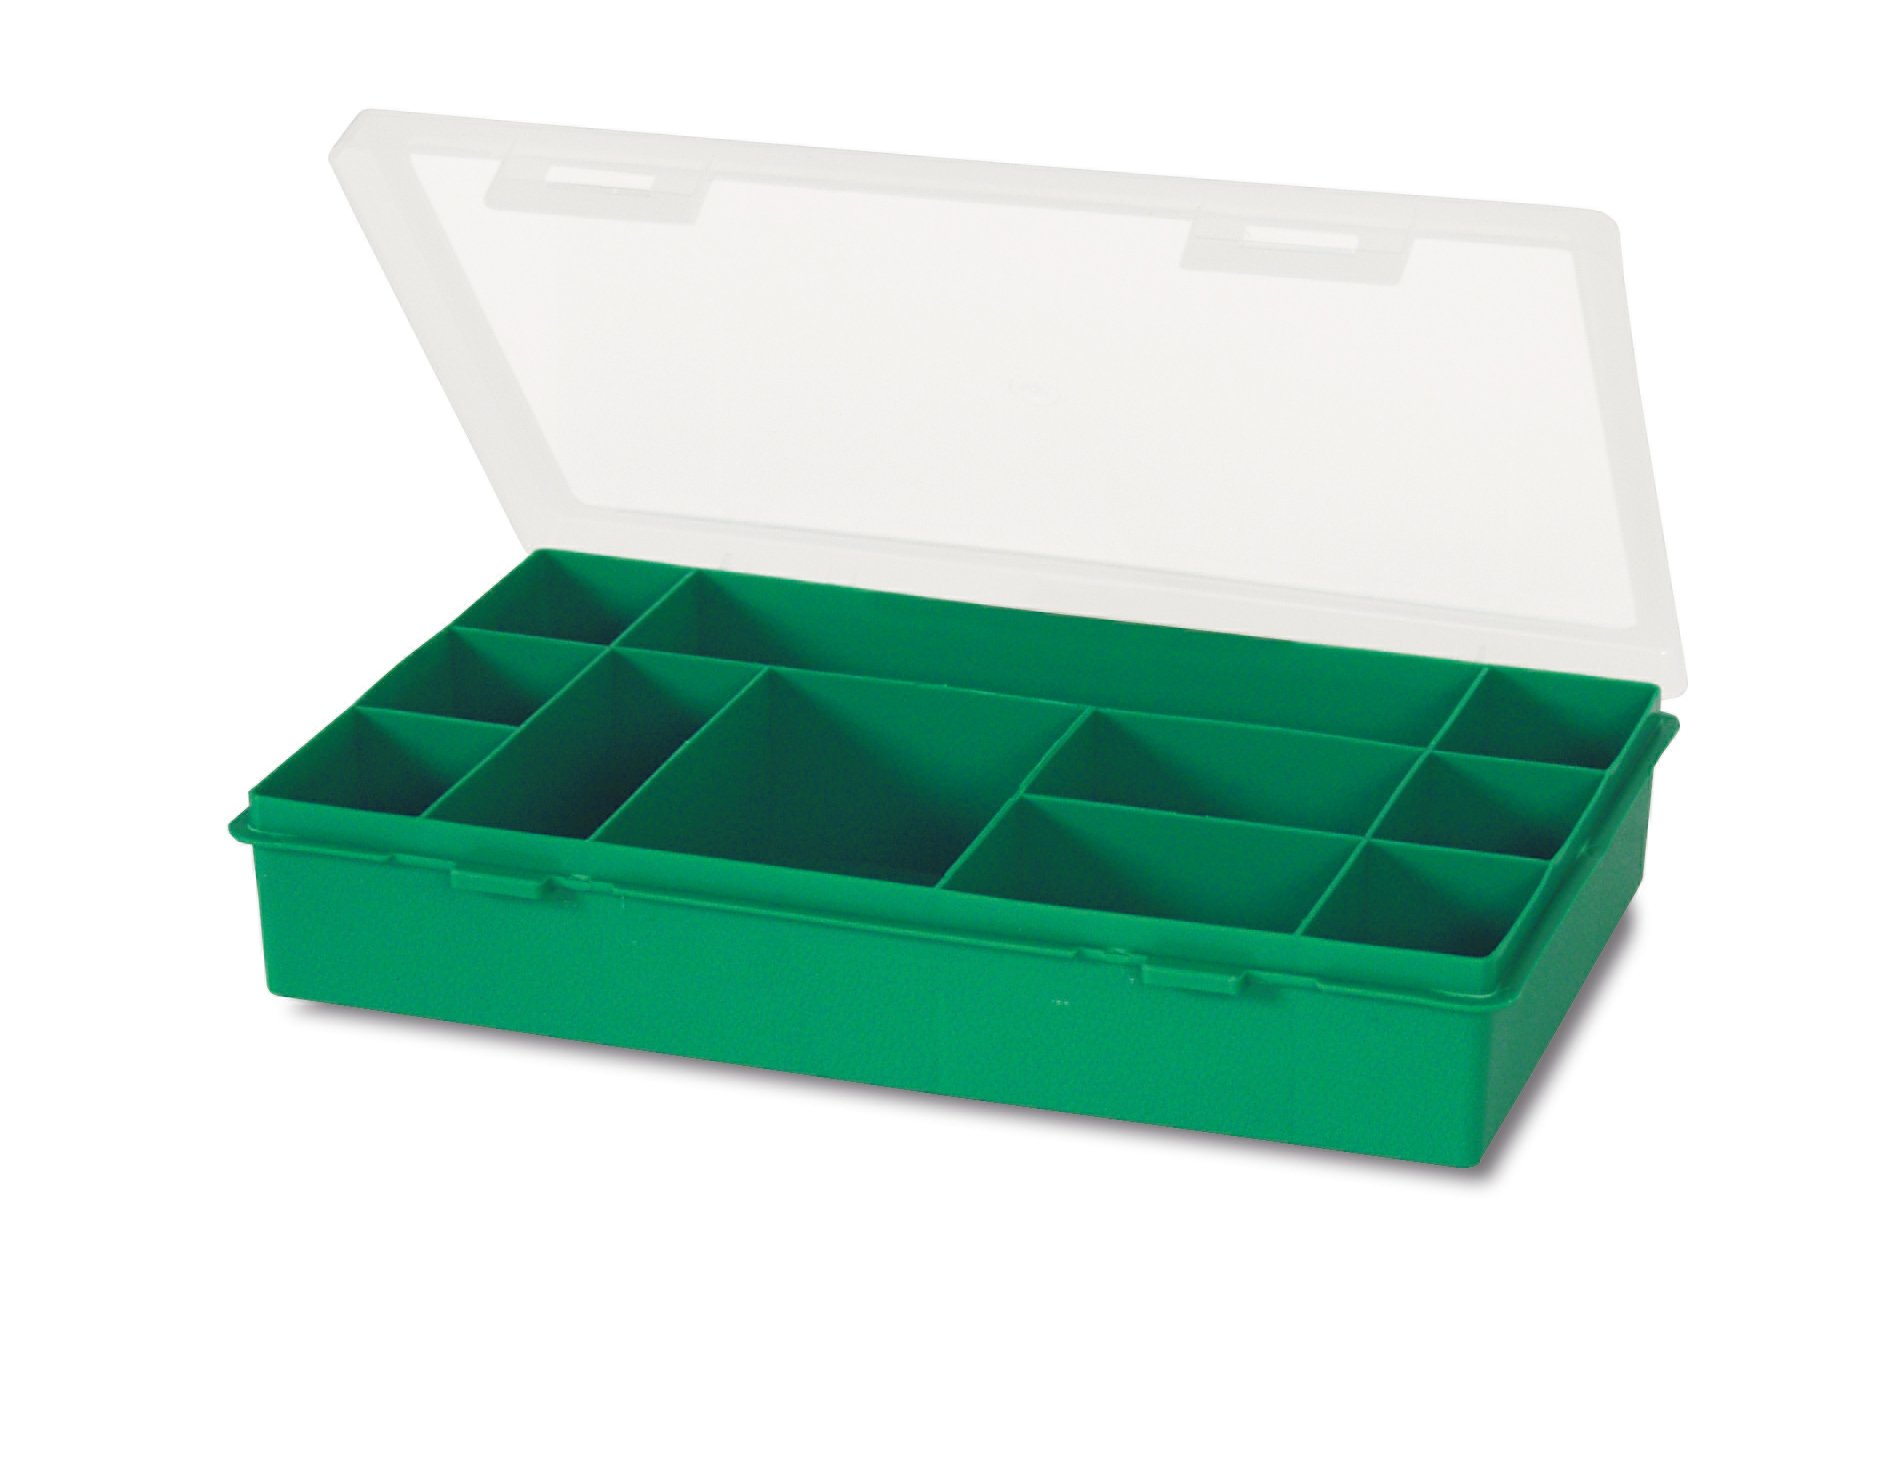 Органайзер Tayg Box 12-11 Estuche, для хранения мелких предметов, 29х19,5х5,4 см, зеленый (061103) - фото 1